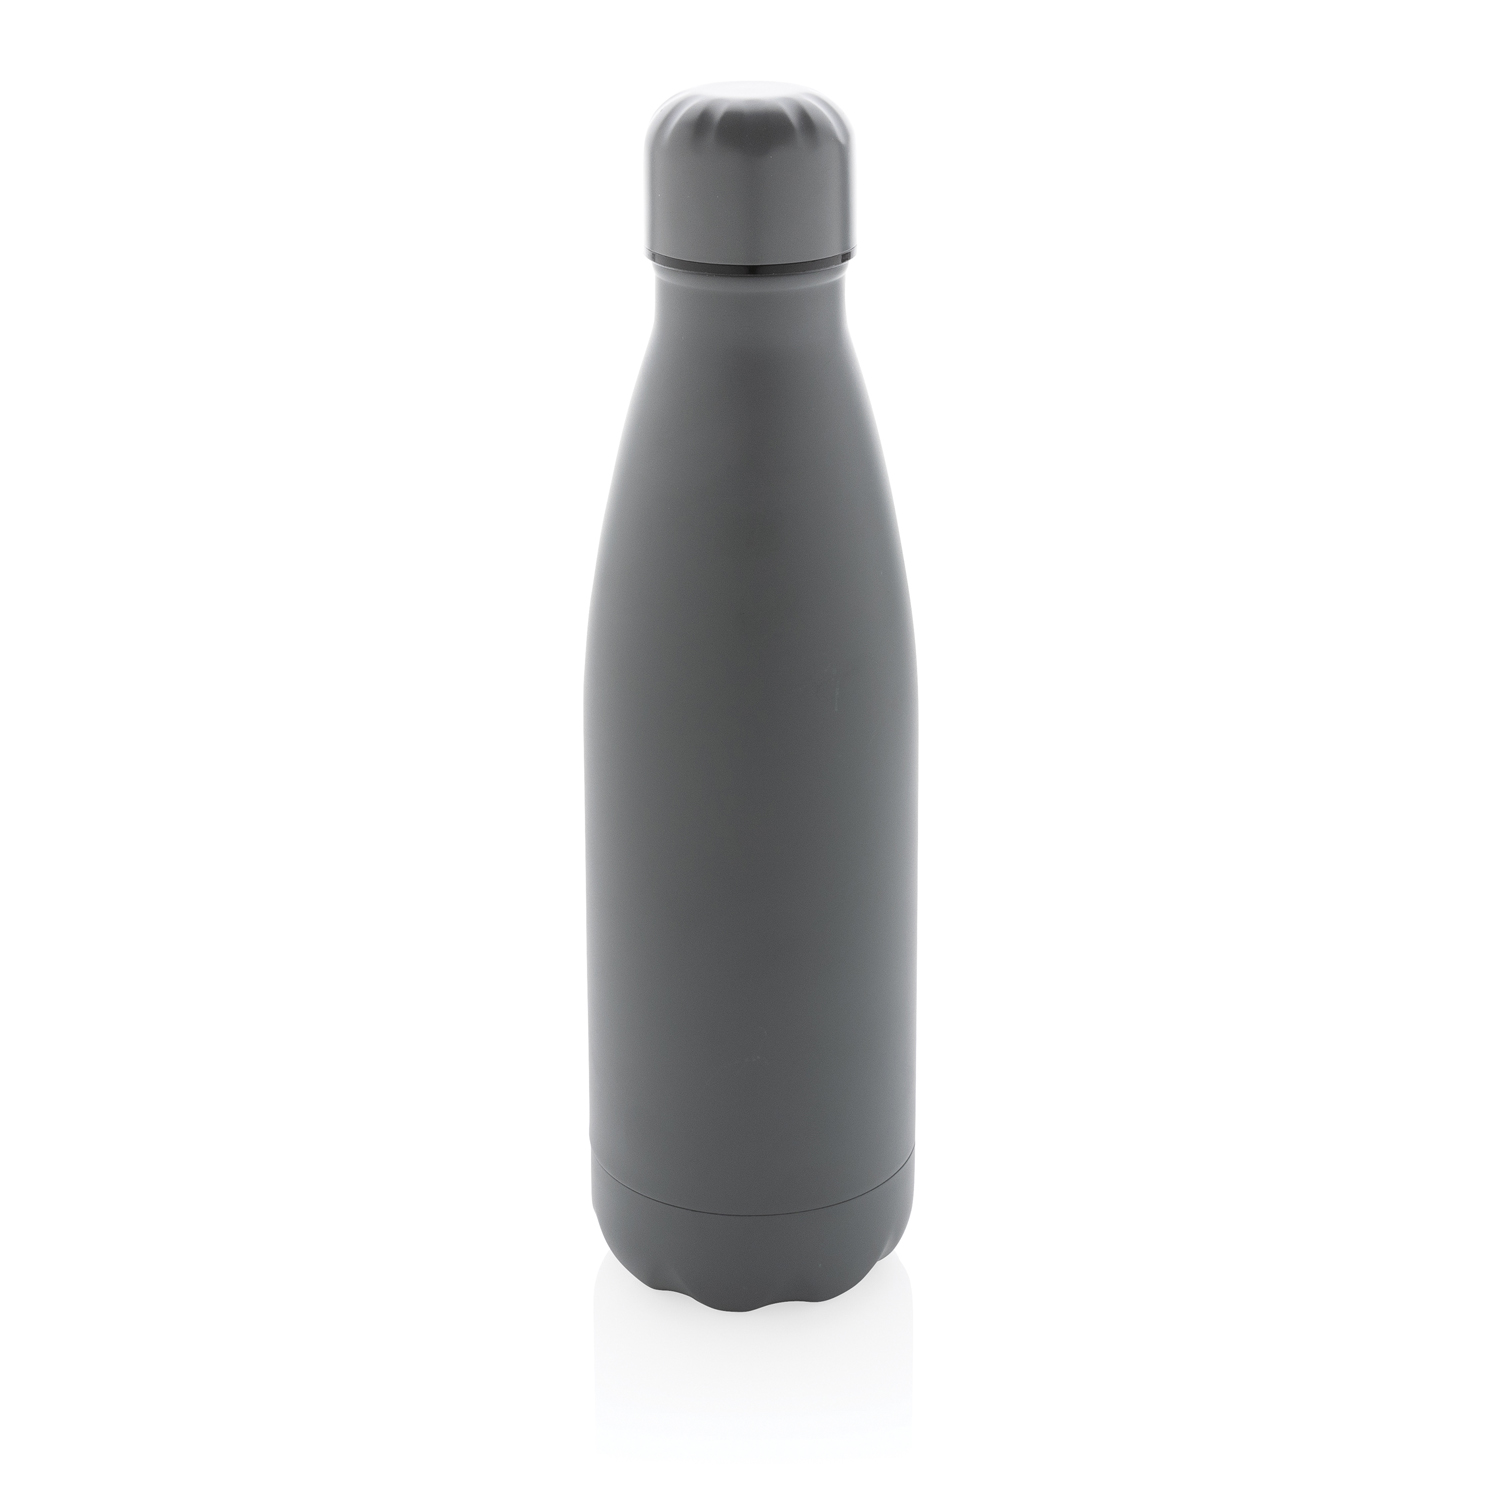 Артикул: XP436.462 — Вакуумная бутылка из нержавеющей стали с крышкой в тон